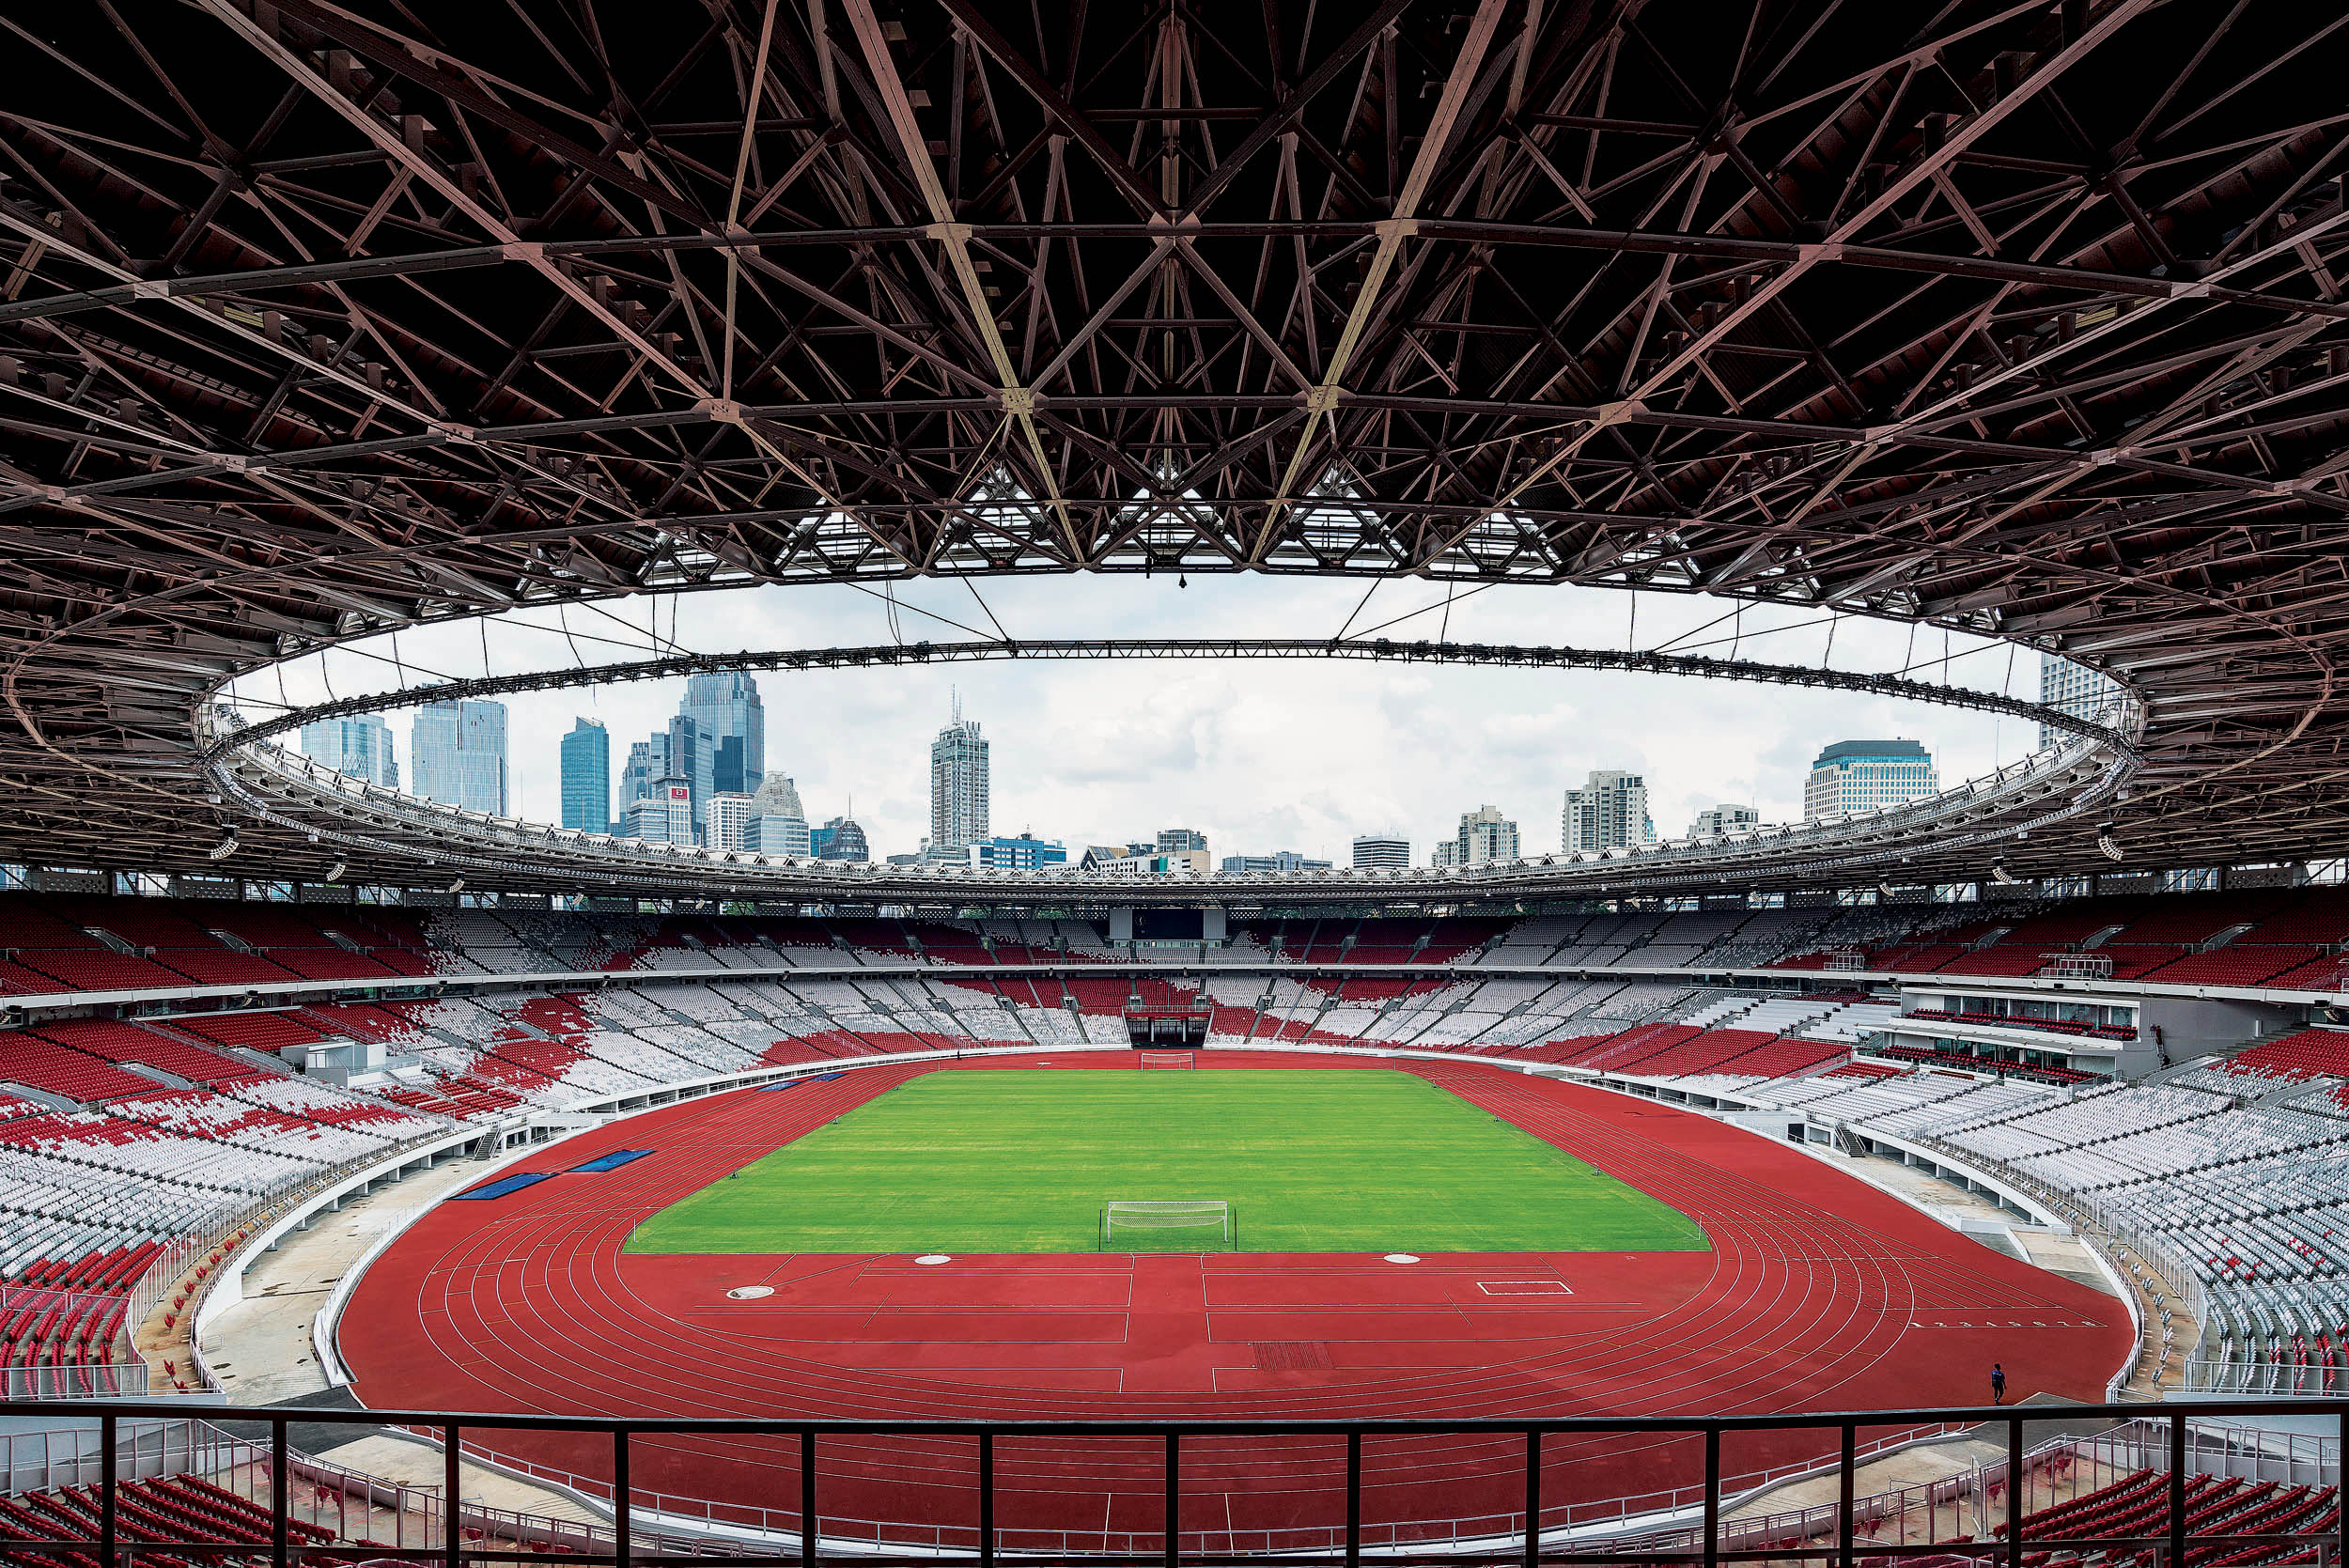 Laga Timnas Indonesia Vs Vietnam akan jadi pertemuan bergengsi antara dua tim yang produktif pada leg pertama semifinal Piala AFF 2022 di Stadion Utama Gelora Bung Karno, Jakarta, Jumat 6 januari 2023. (net)